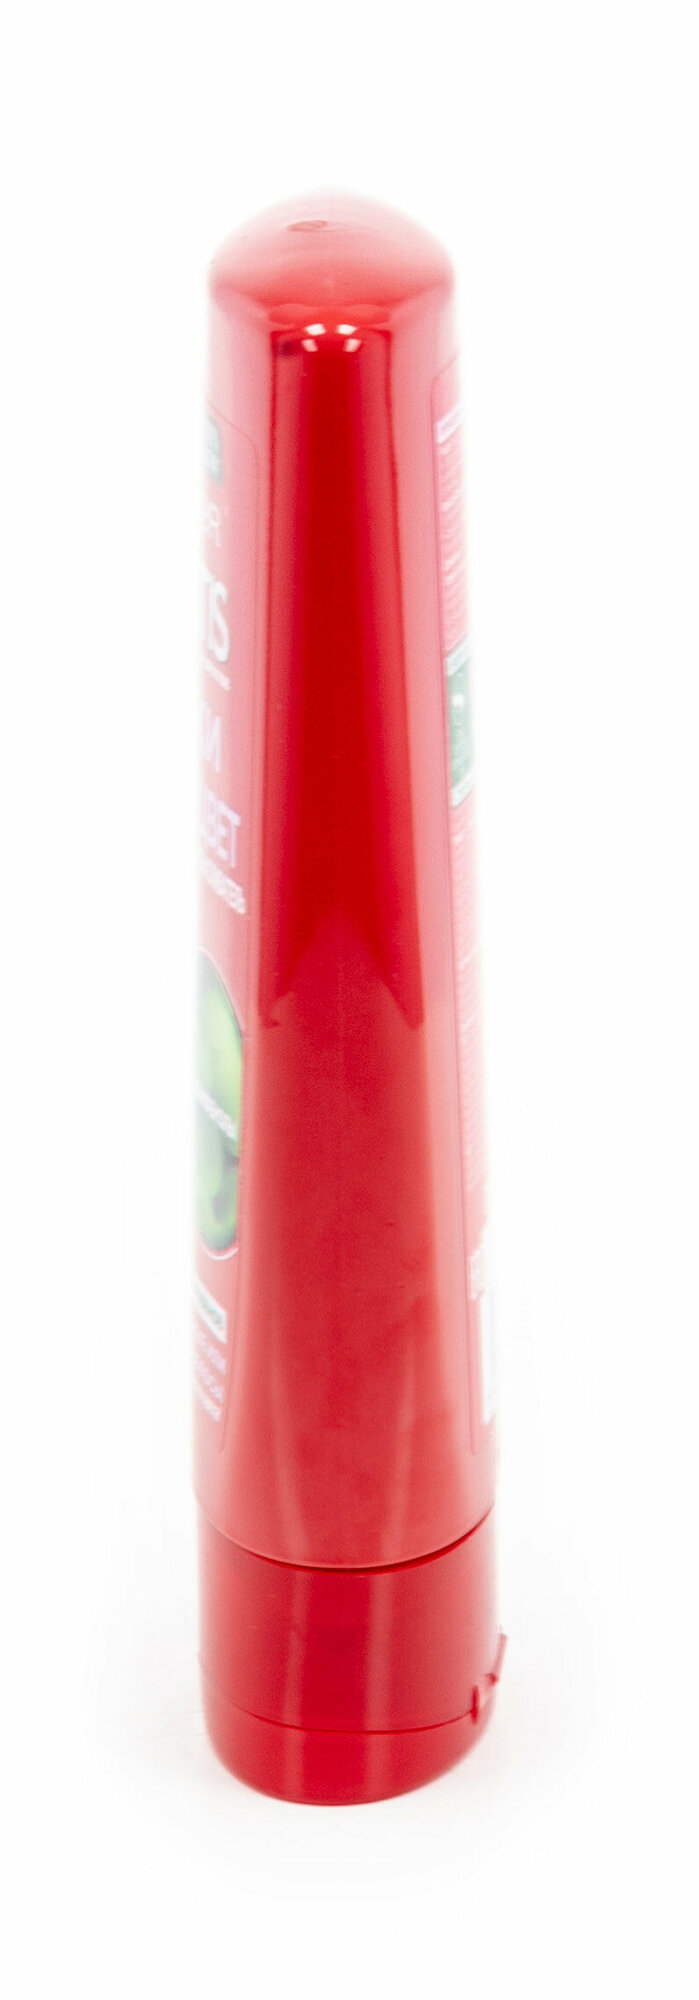 Бальзам-ополаскиватель Garnier Fructis Годжи Стойкий цвет, для окрашенных или мелированных волос, 250 мл - фото №15